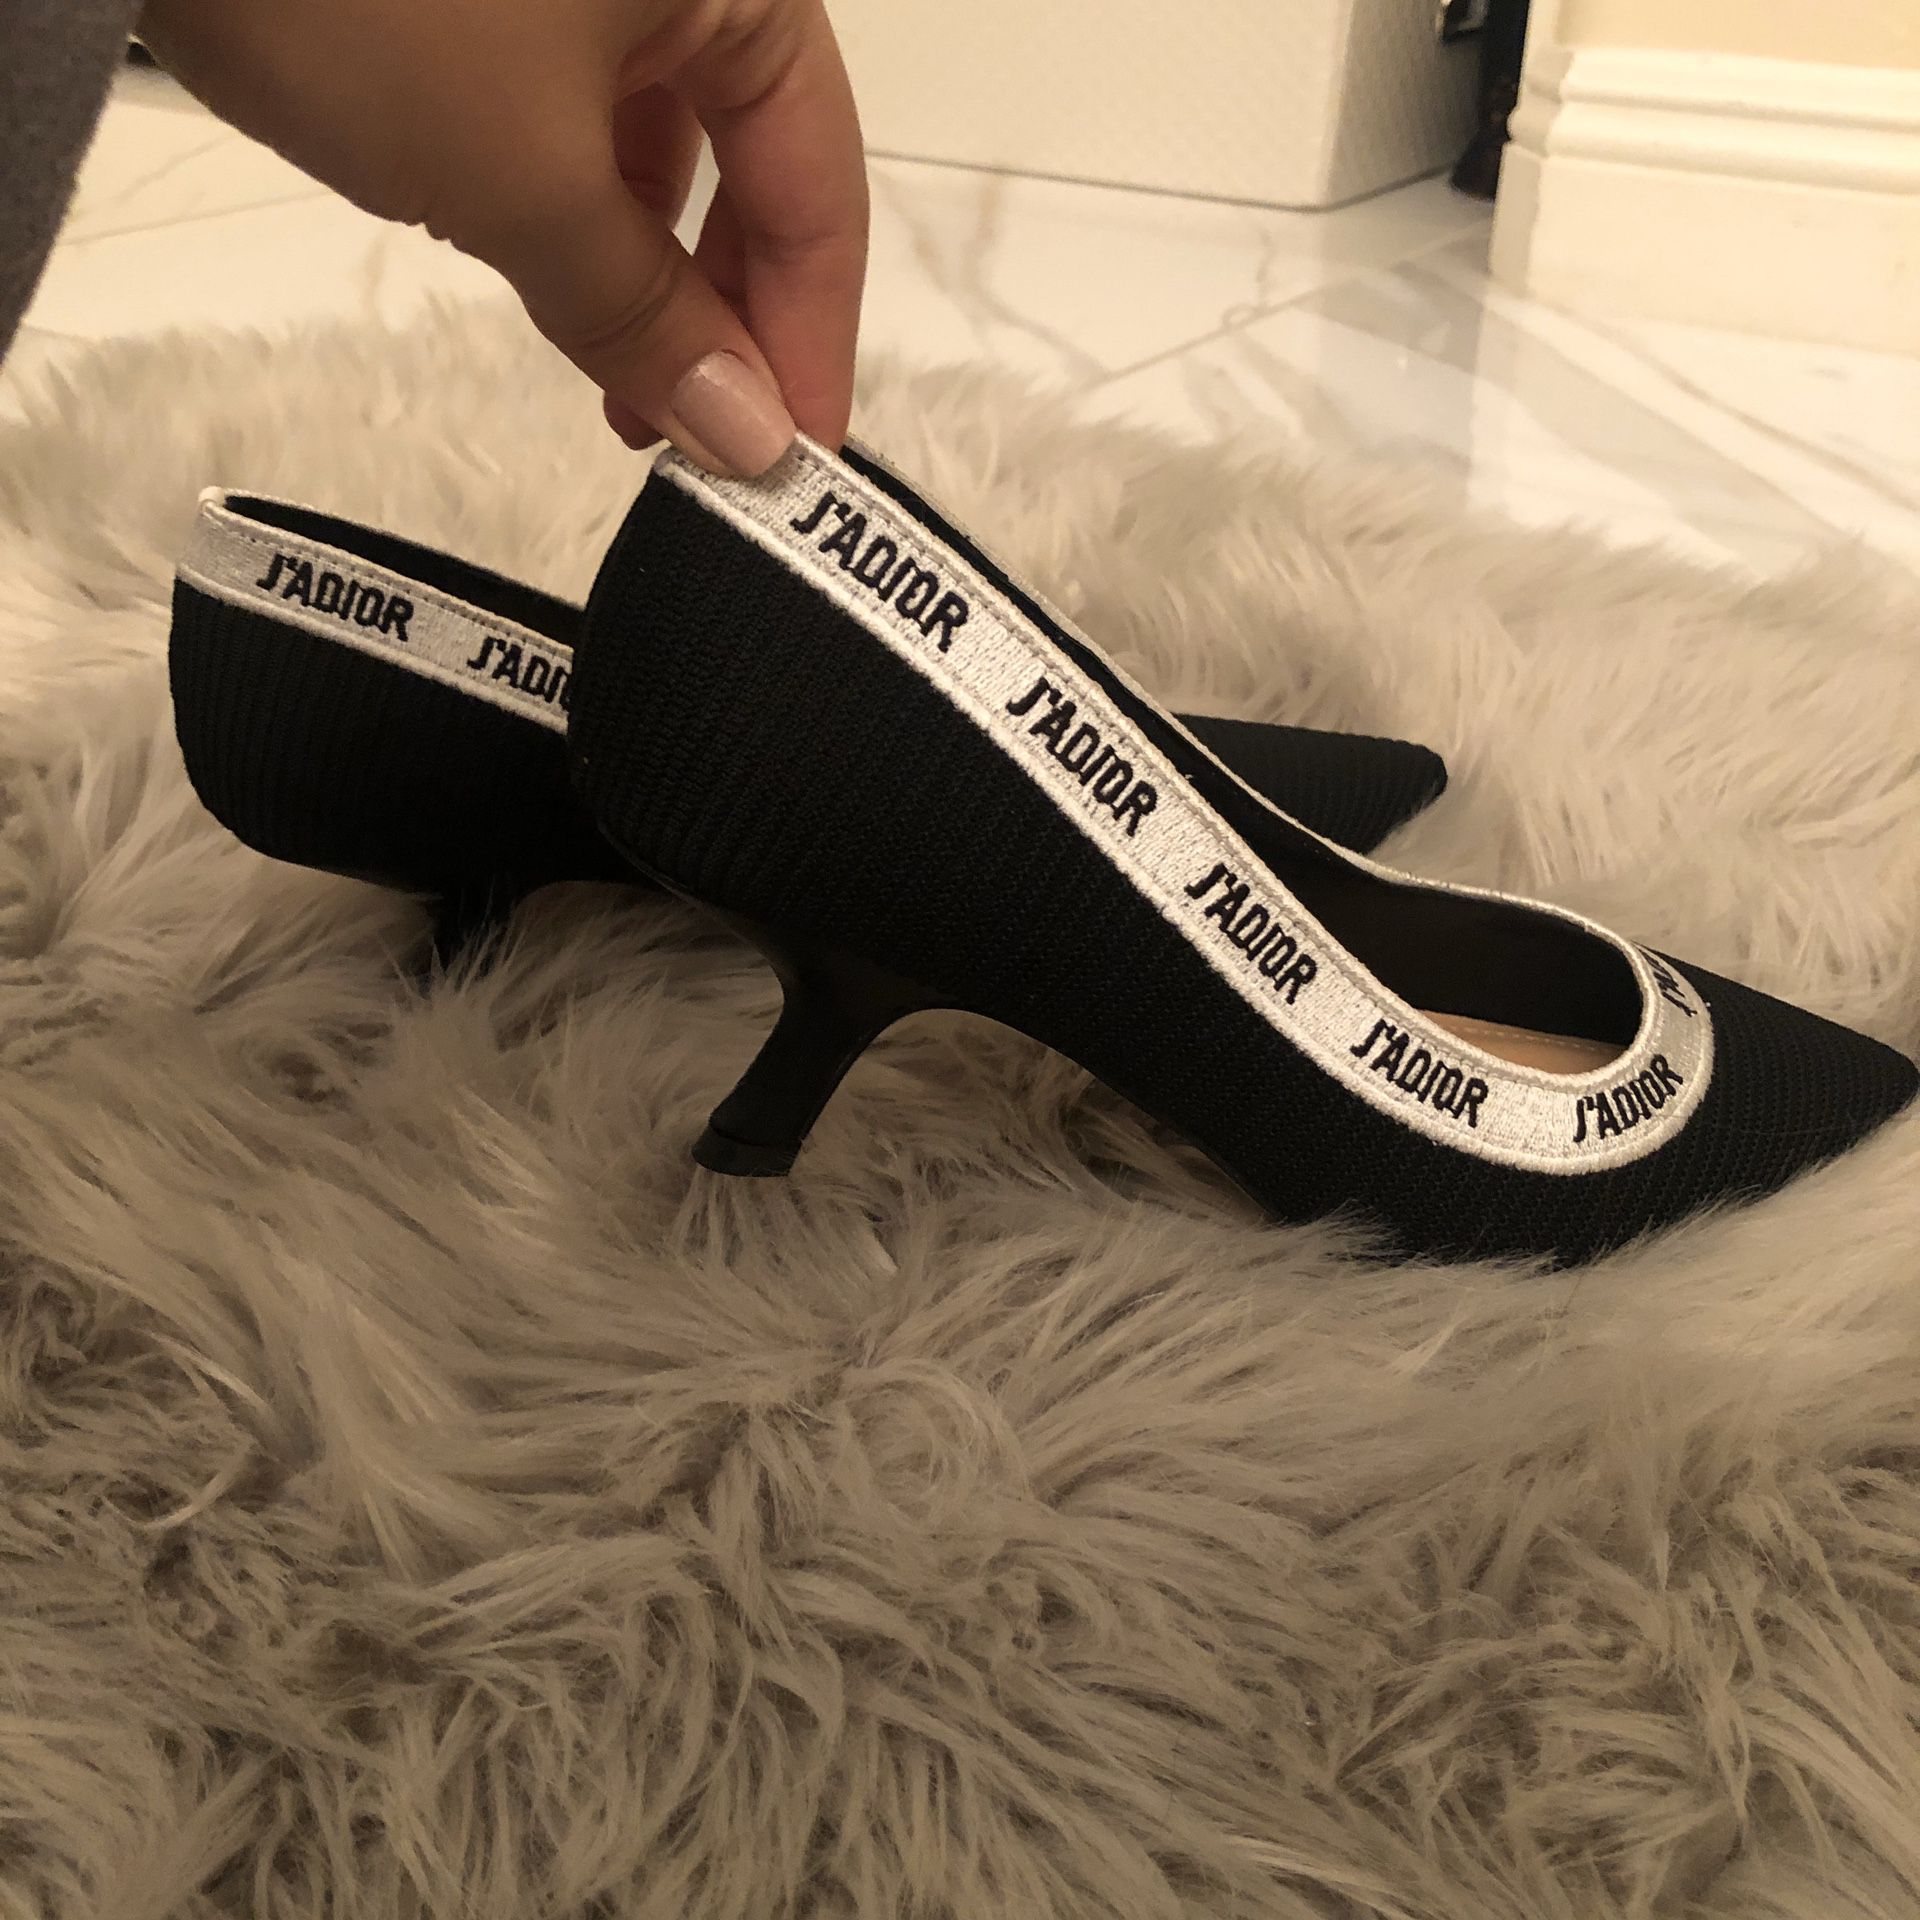 Black J’ADIOR kitten heels